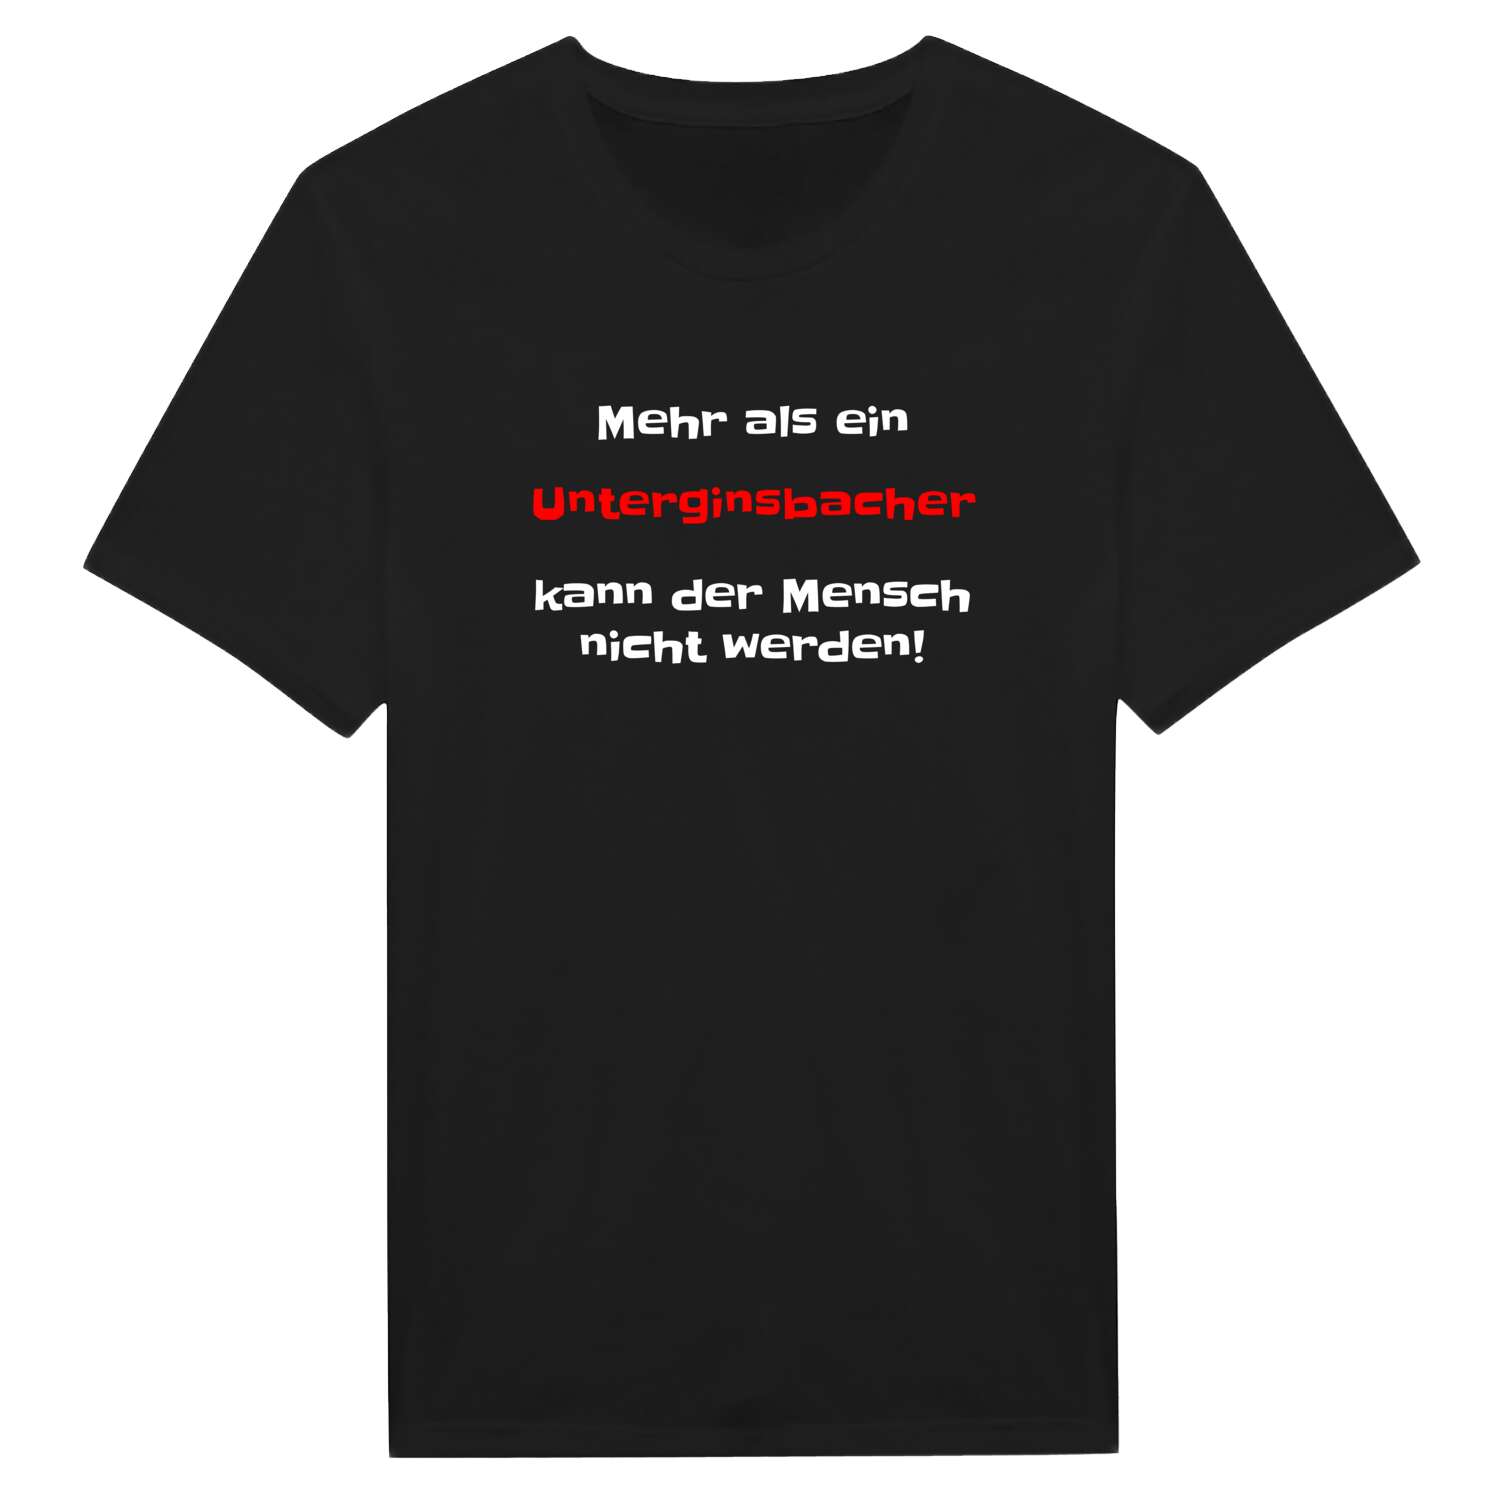 Unterginsbach T-Shirt »Mehr als ein«